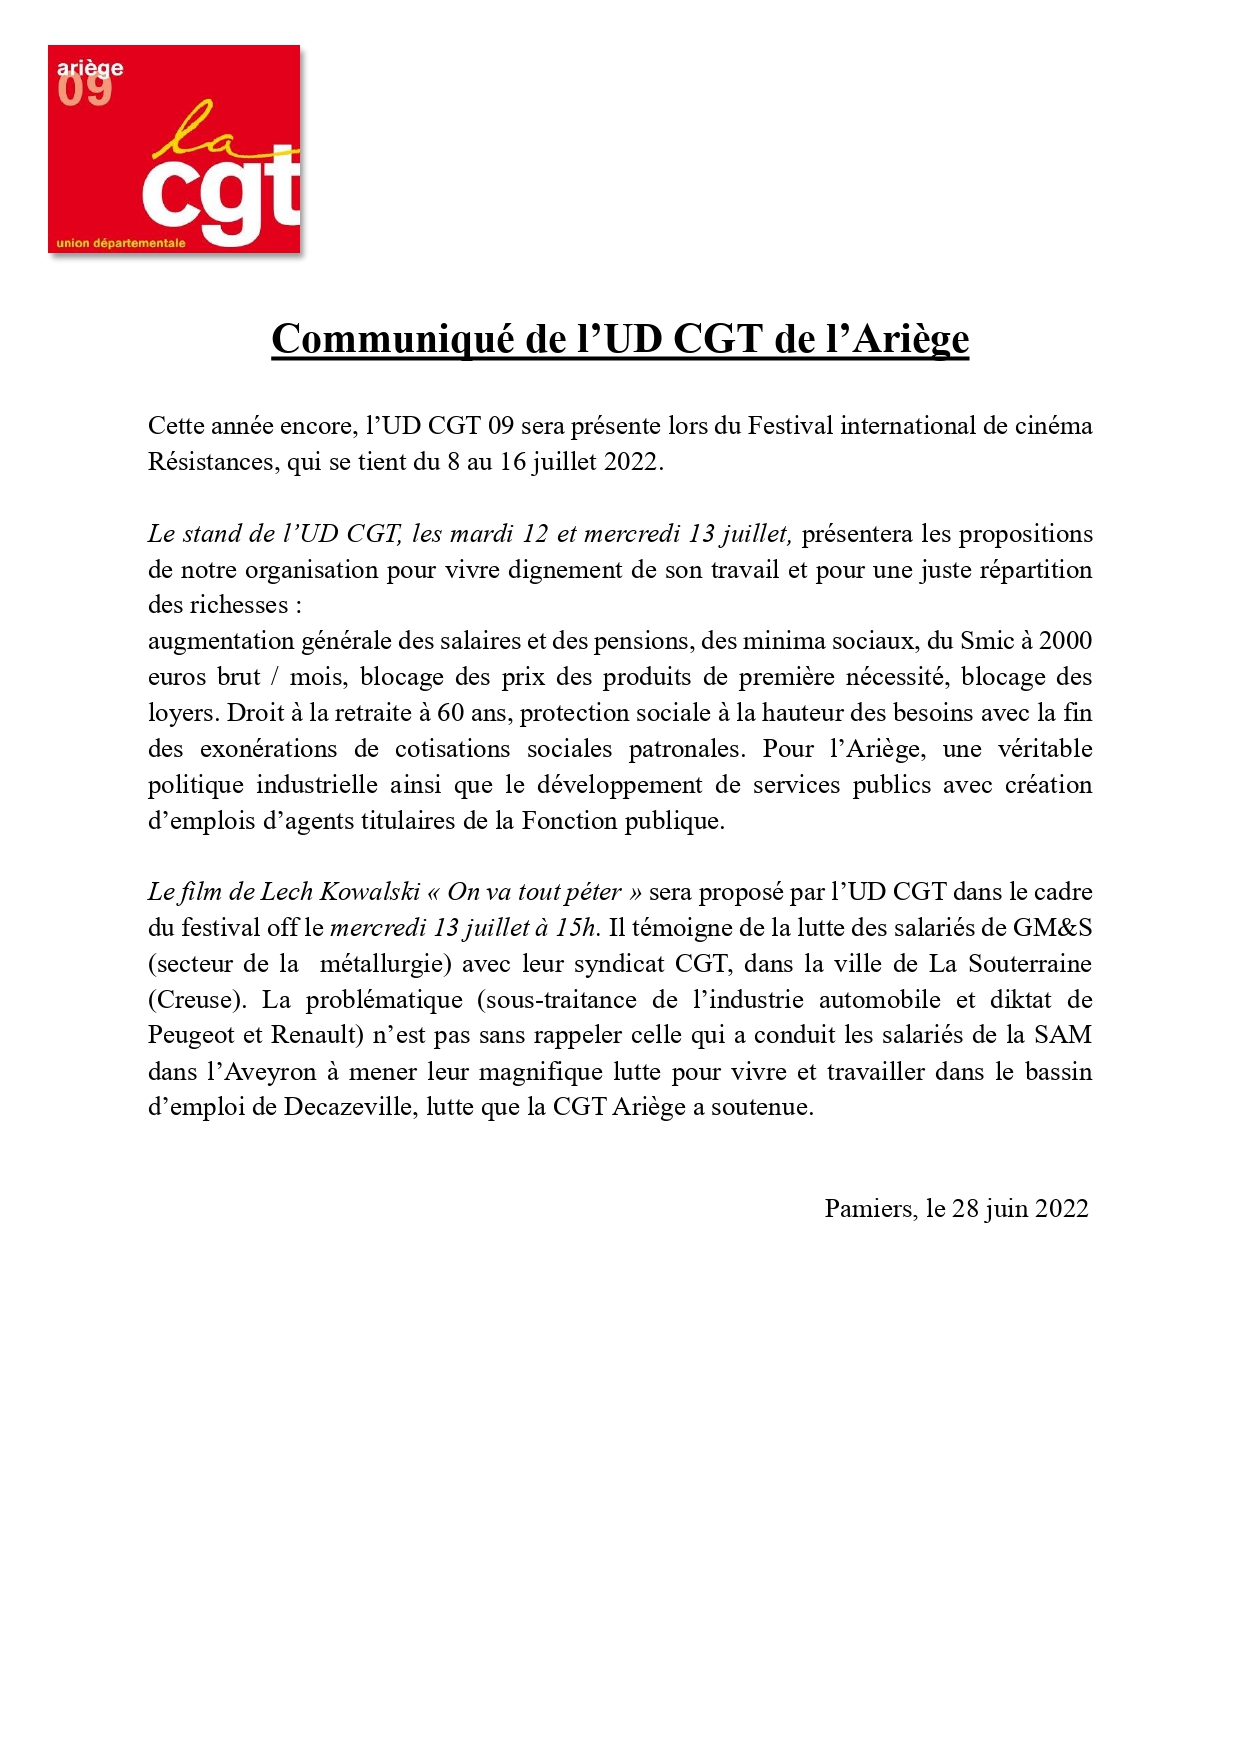 Communiqué UD CGT 09 Festival Résistances 2022